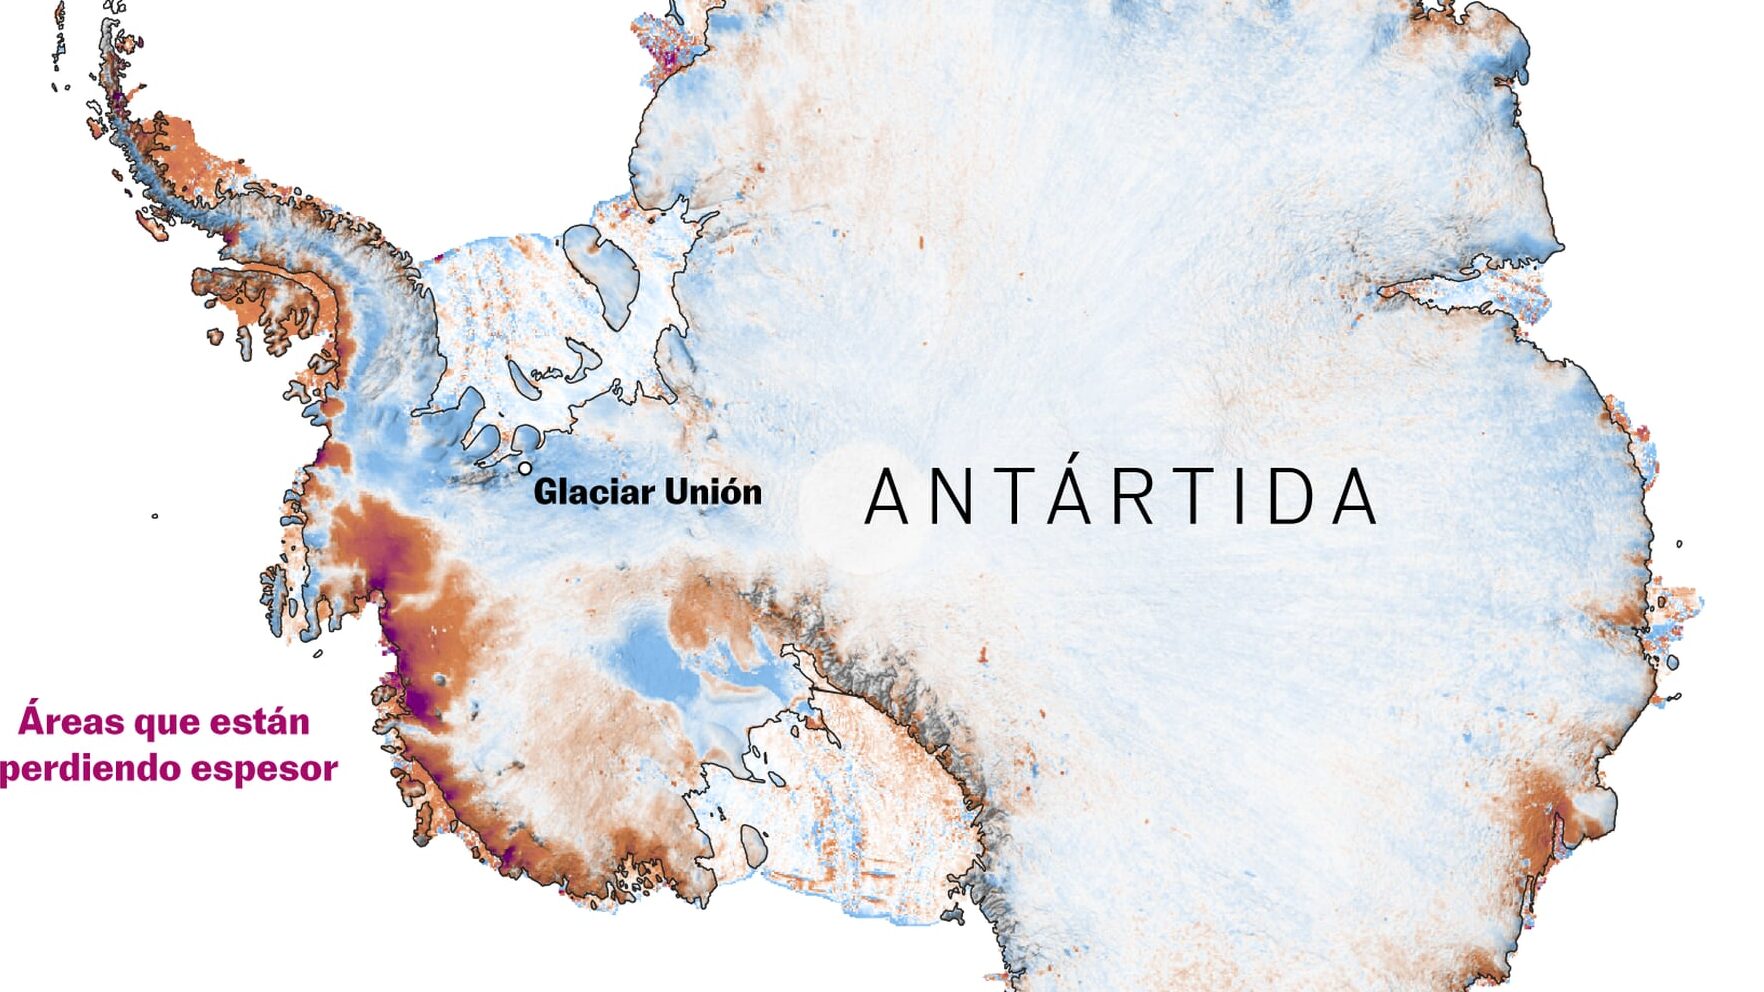 La distancia entre Argentina y la Antártida: ¿Qué tan lejos están realmente?